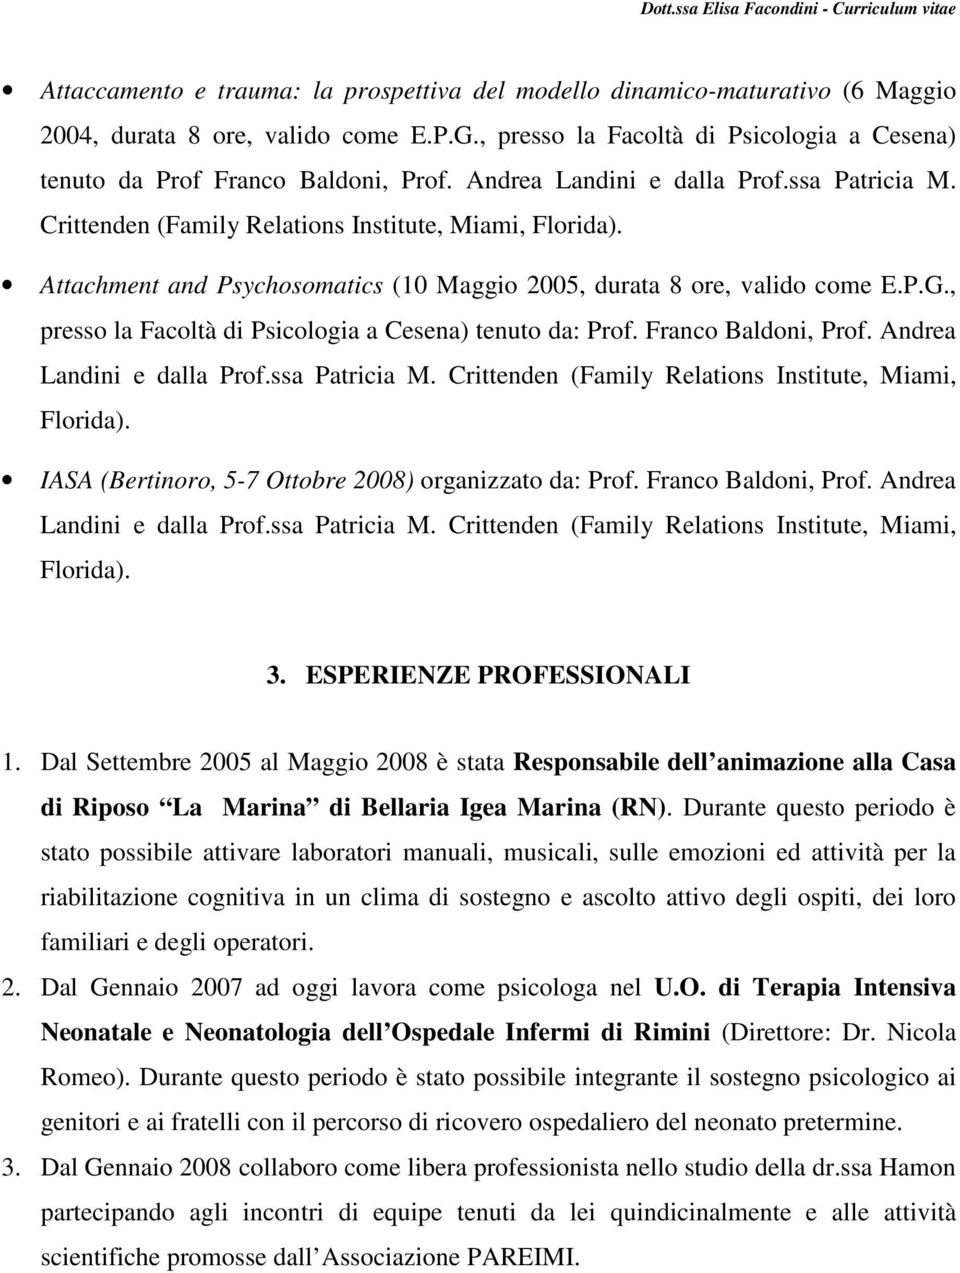 Attachment and Psychosomatics (10 Maggio 2005, durata 8 ore, valido come E.P.G., presso la Facoltà di Psicologia a Cesena) tenuto da: Prof. Franco Baldoni, Prof. Andrea Landini e dalla Prof.